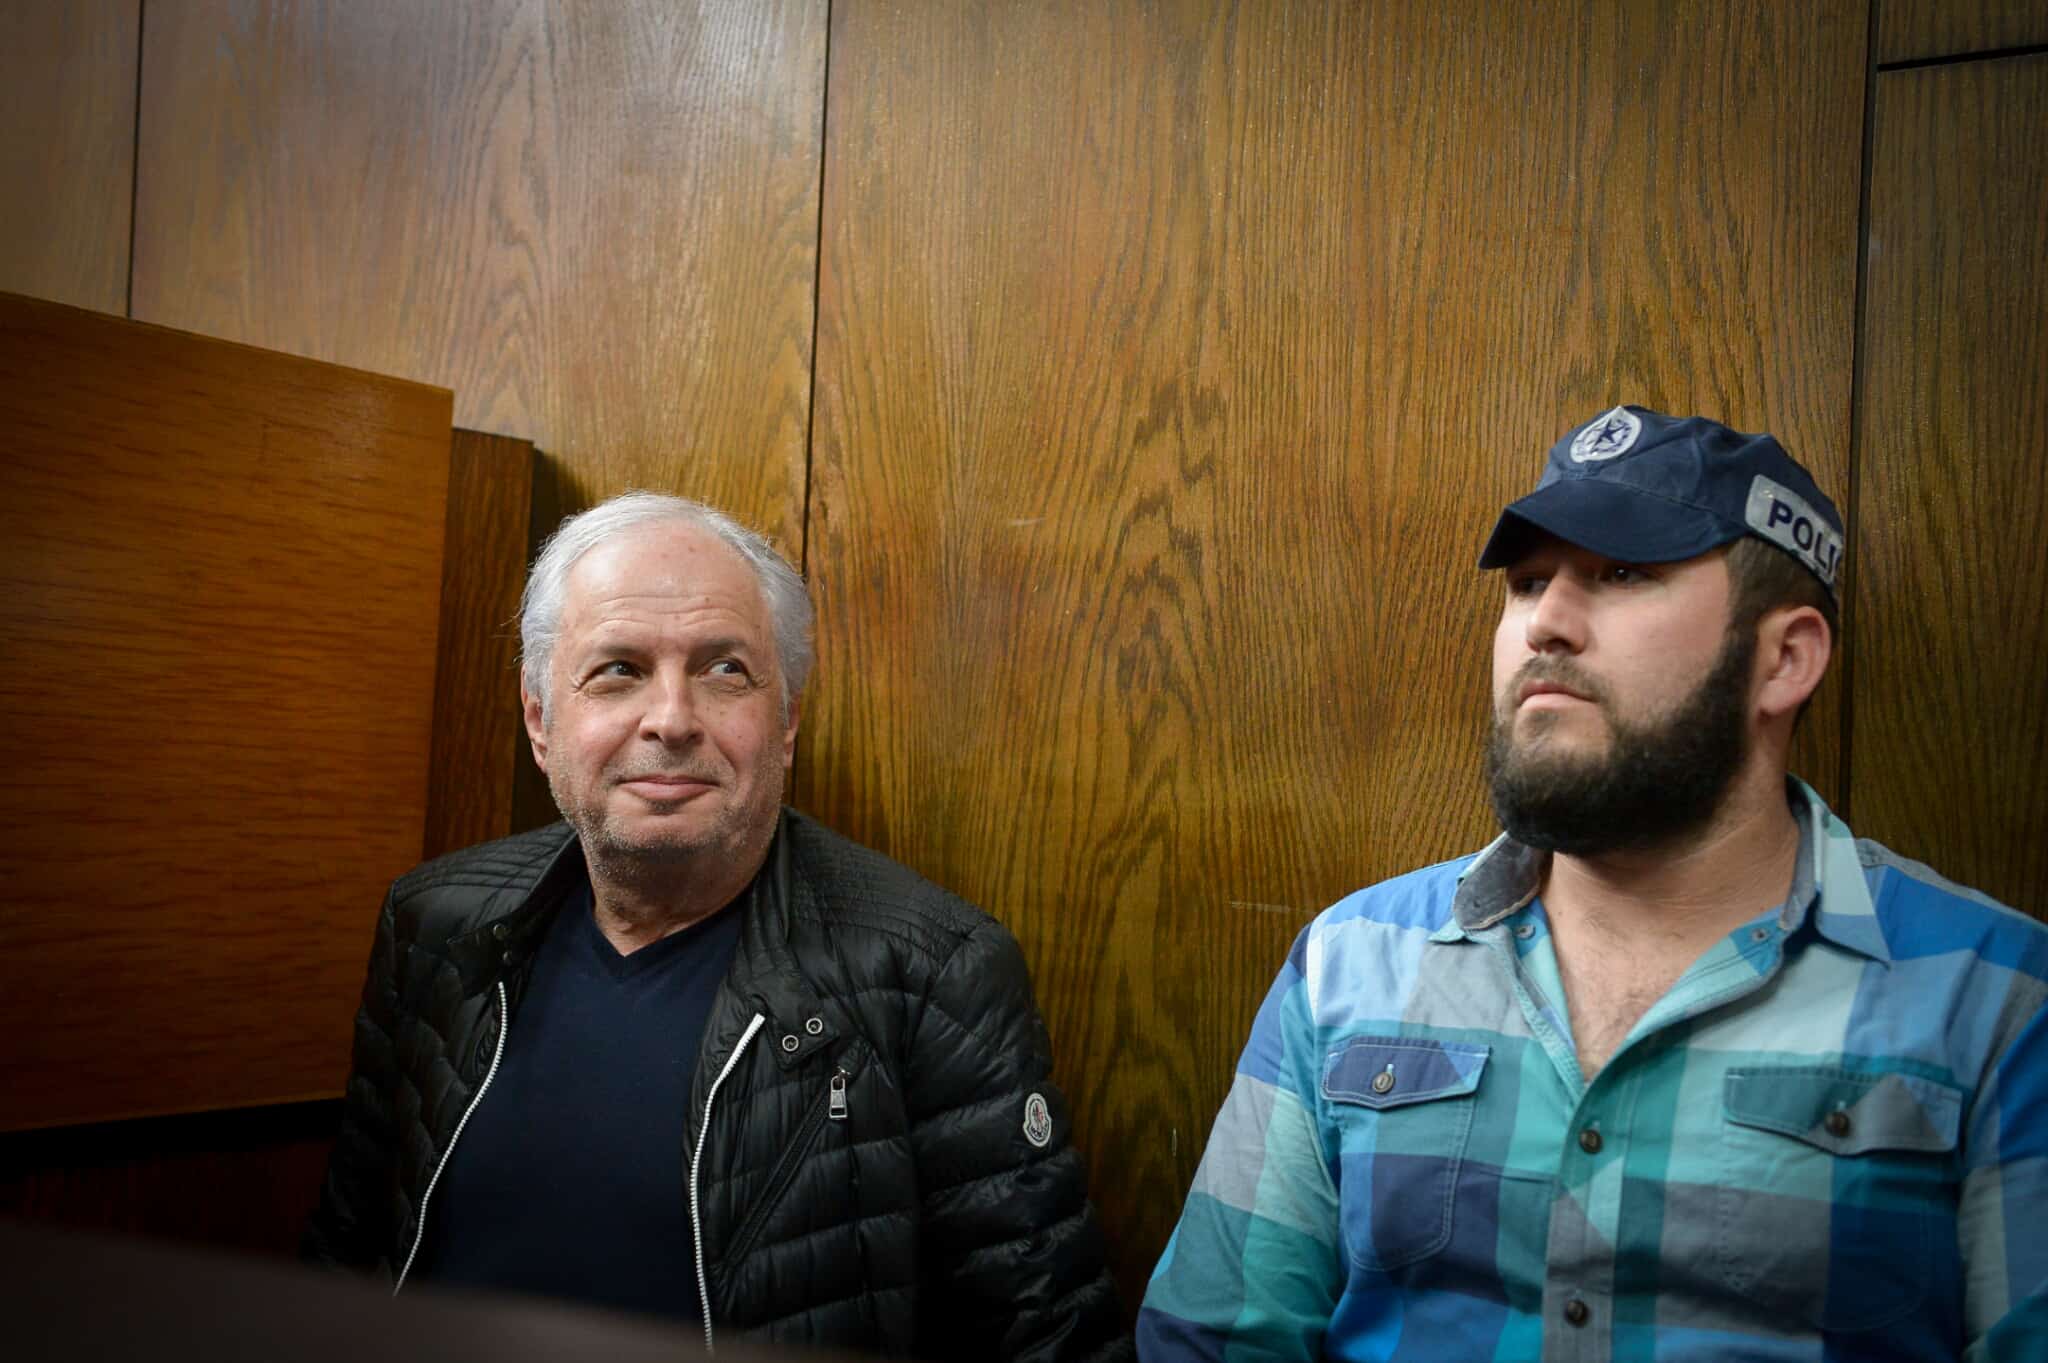 שאול אלוביץ, מבעלי בזק, בעת הארכת מעצרו בתיק 4000 בפברואר 2018 (צילום: פלאש90)